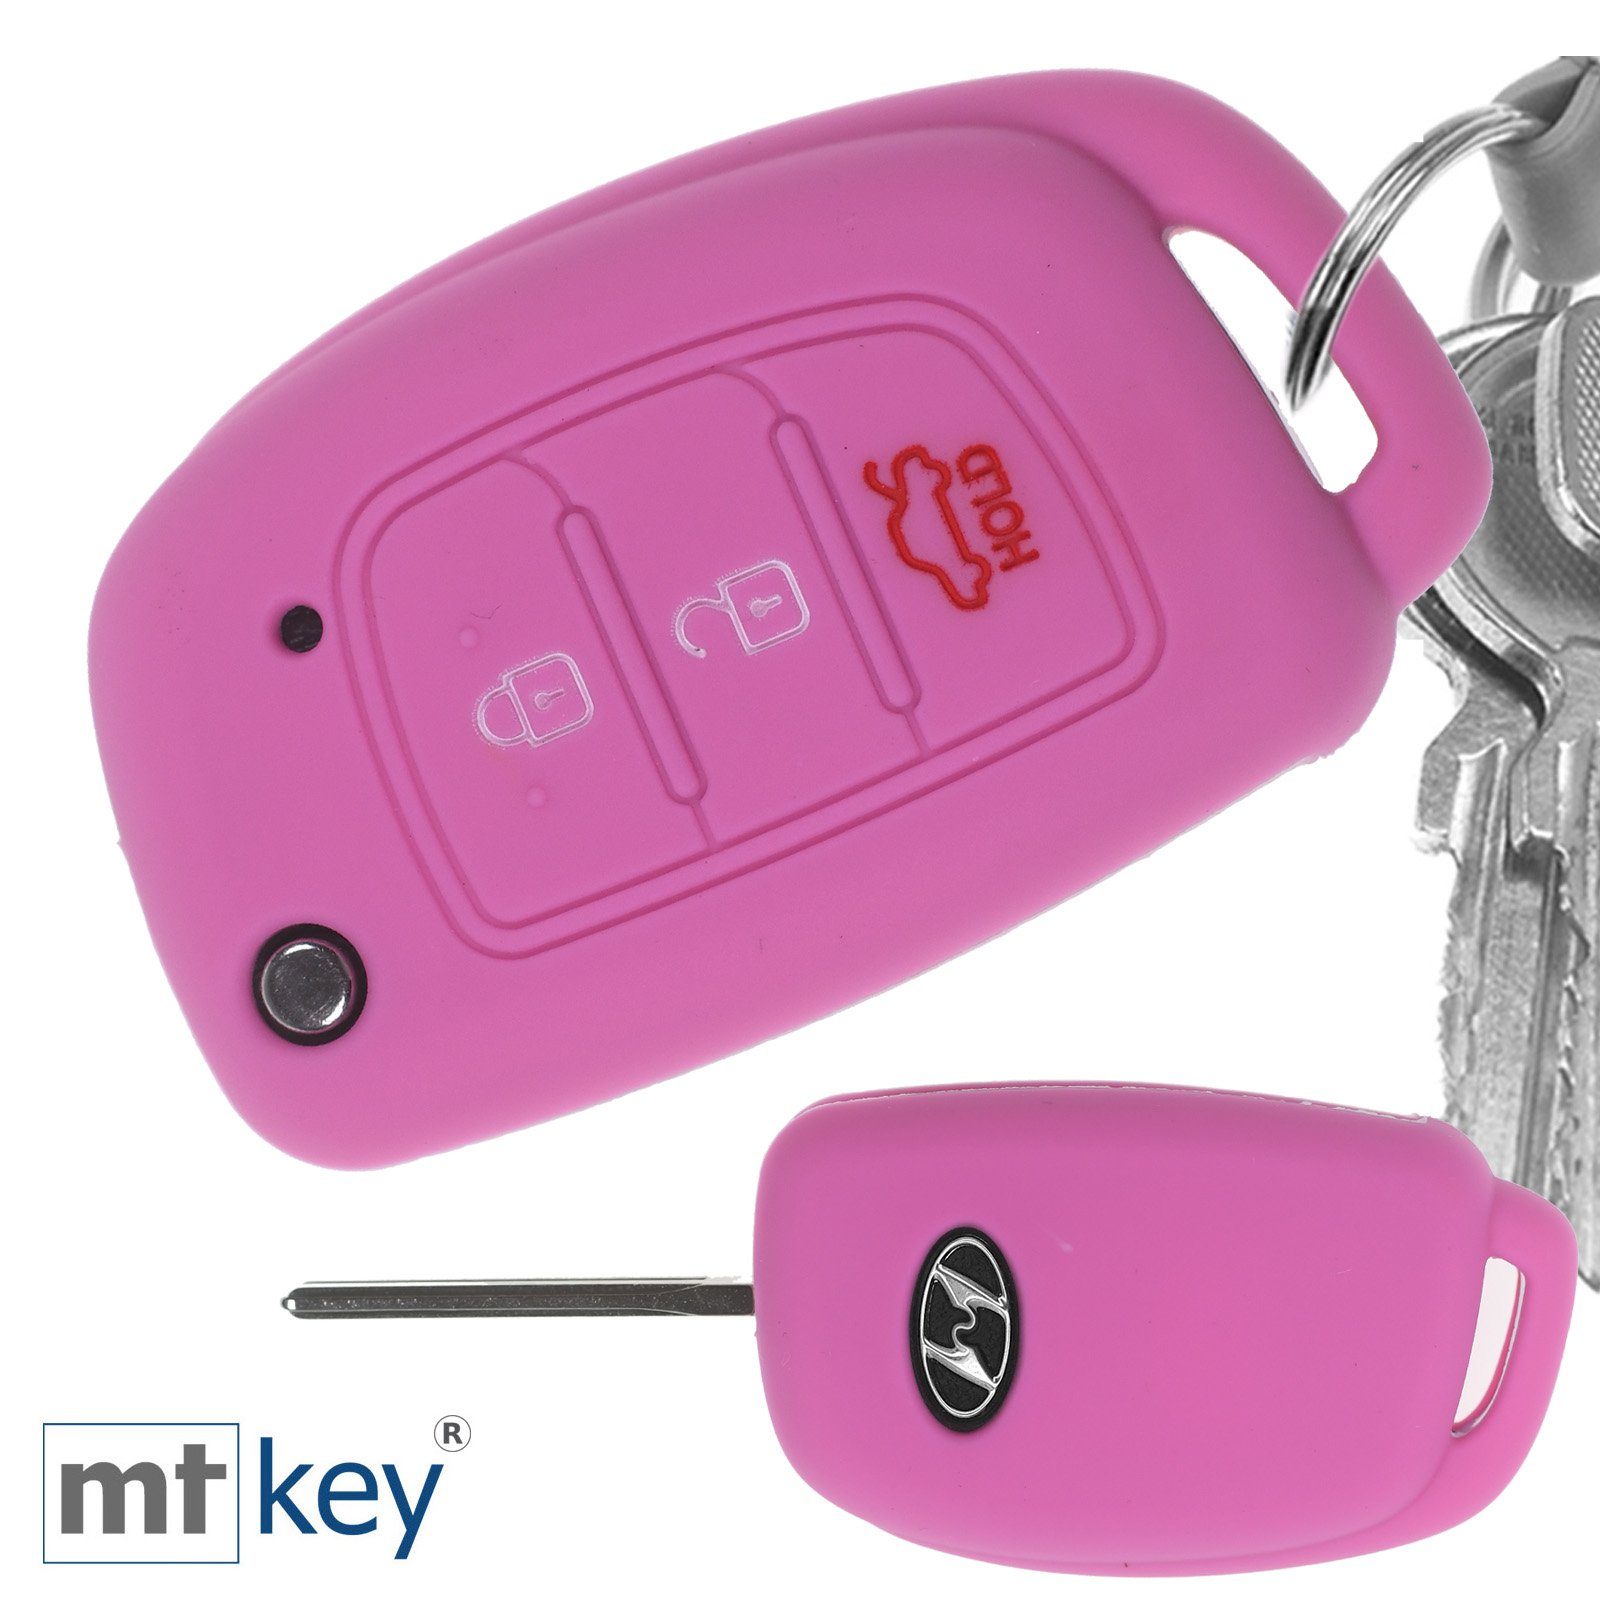 mt-key Schlüsseltasche Autoschlüssel Softcase Silikon Schutzhülle im Wabe Design Rosa, für Hyundai i10 i20 ix25 ix35 i40 Accent Tucson 3 Knopf Klappschlüssel